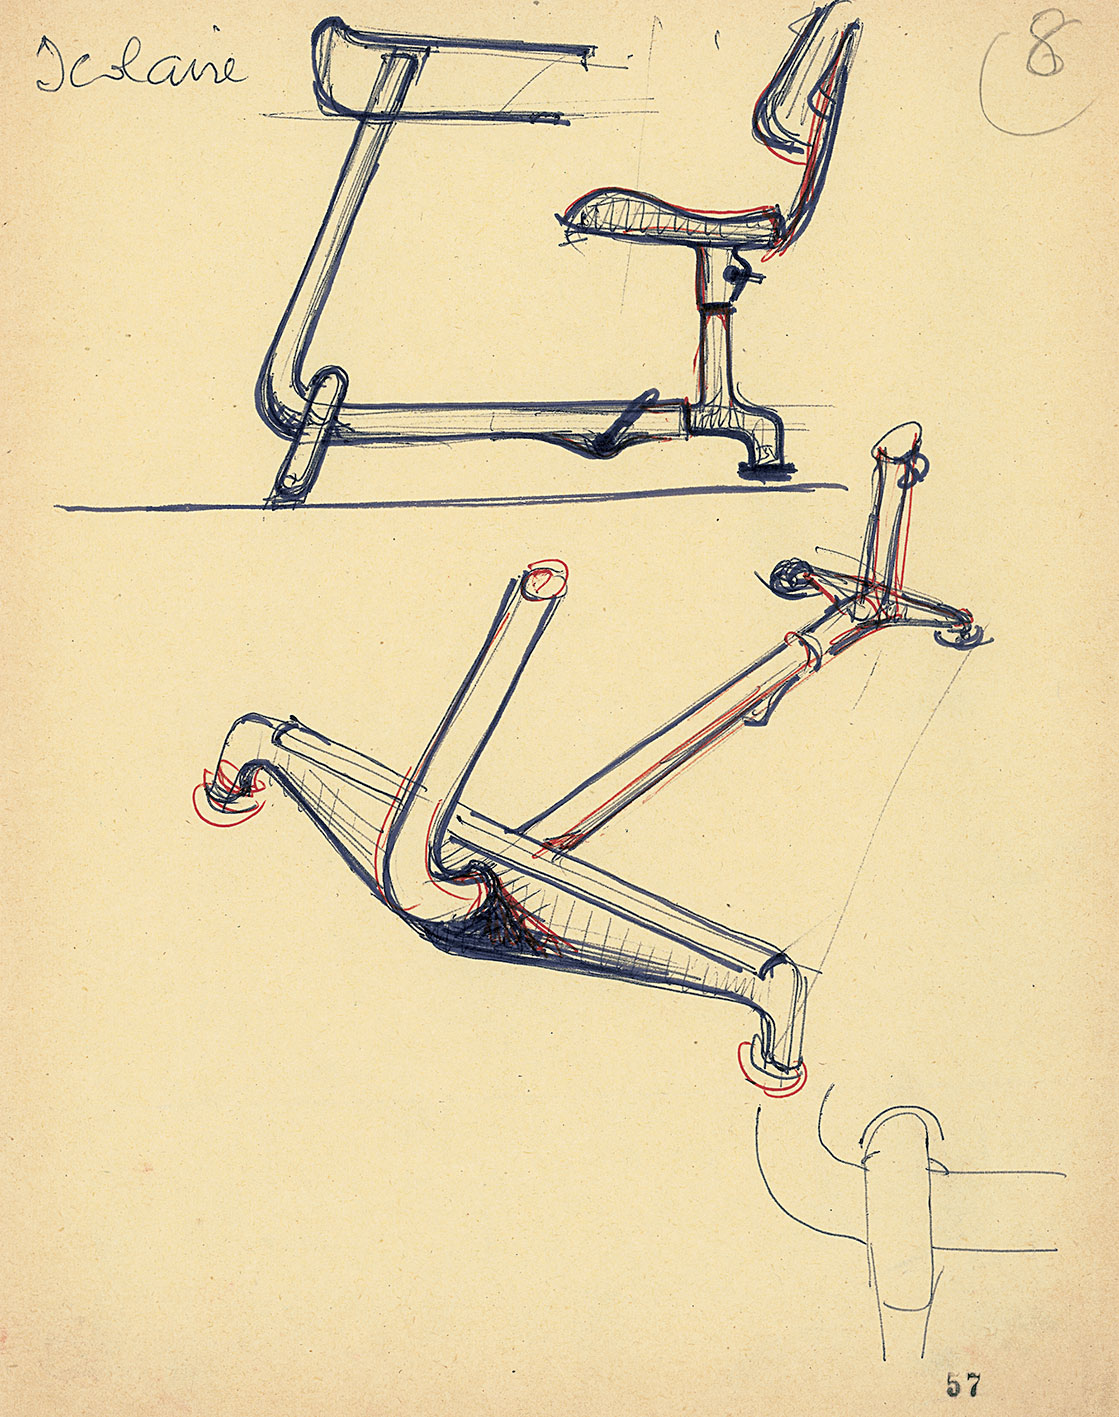 « Scolaire », pupitre monoplace réglable créé en 1938. Croquis de Jean Prouvé pour ses cours au CNAM, 1957-1971.